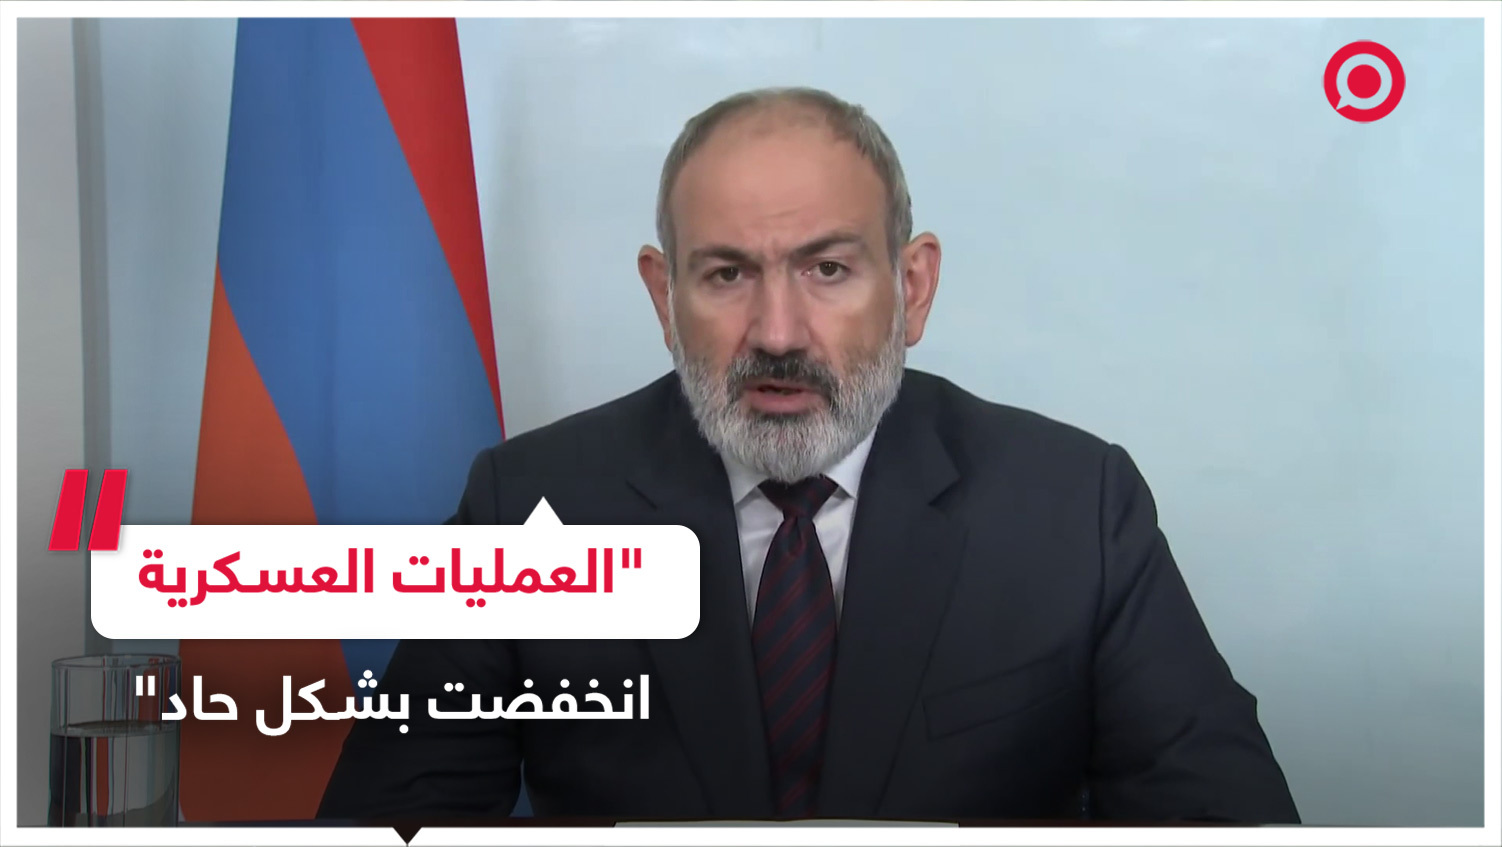 تعليق رئيس الوزراء الأرميني على العمليات العسكرية في قره باغ